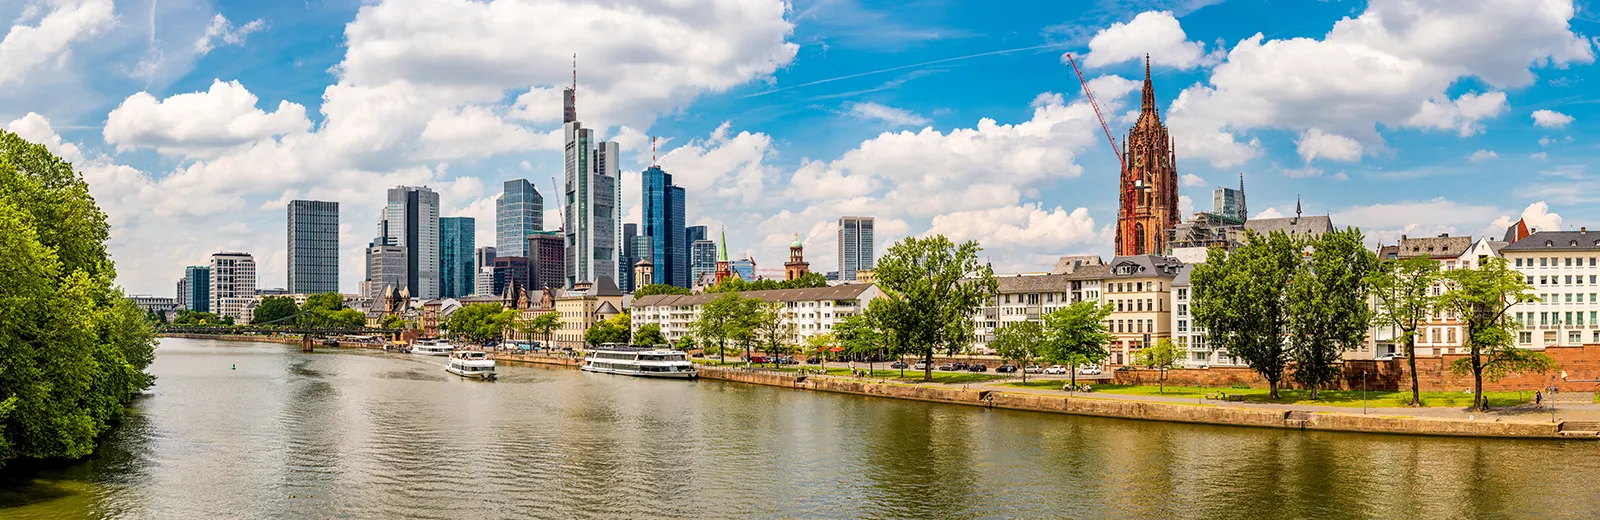 Frankfurt Stadtansicht mit Fachwerkhäusern